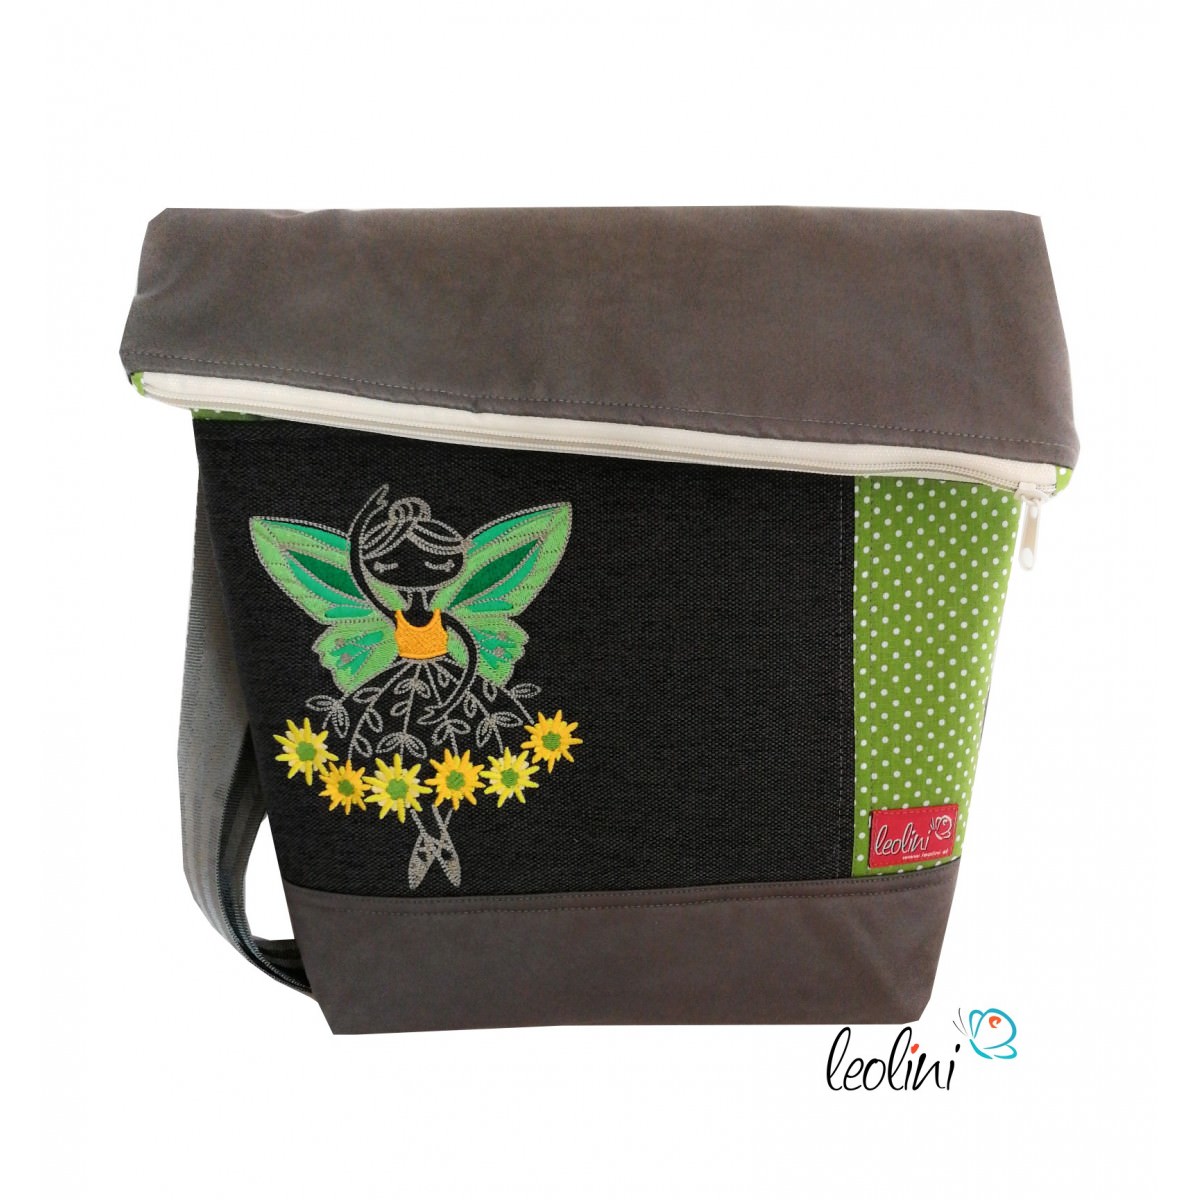 Foldover Tasche mit Stickderei Blumenballerina grau grün